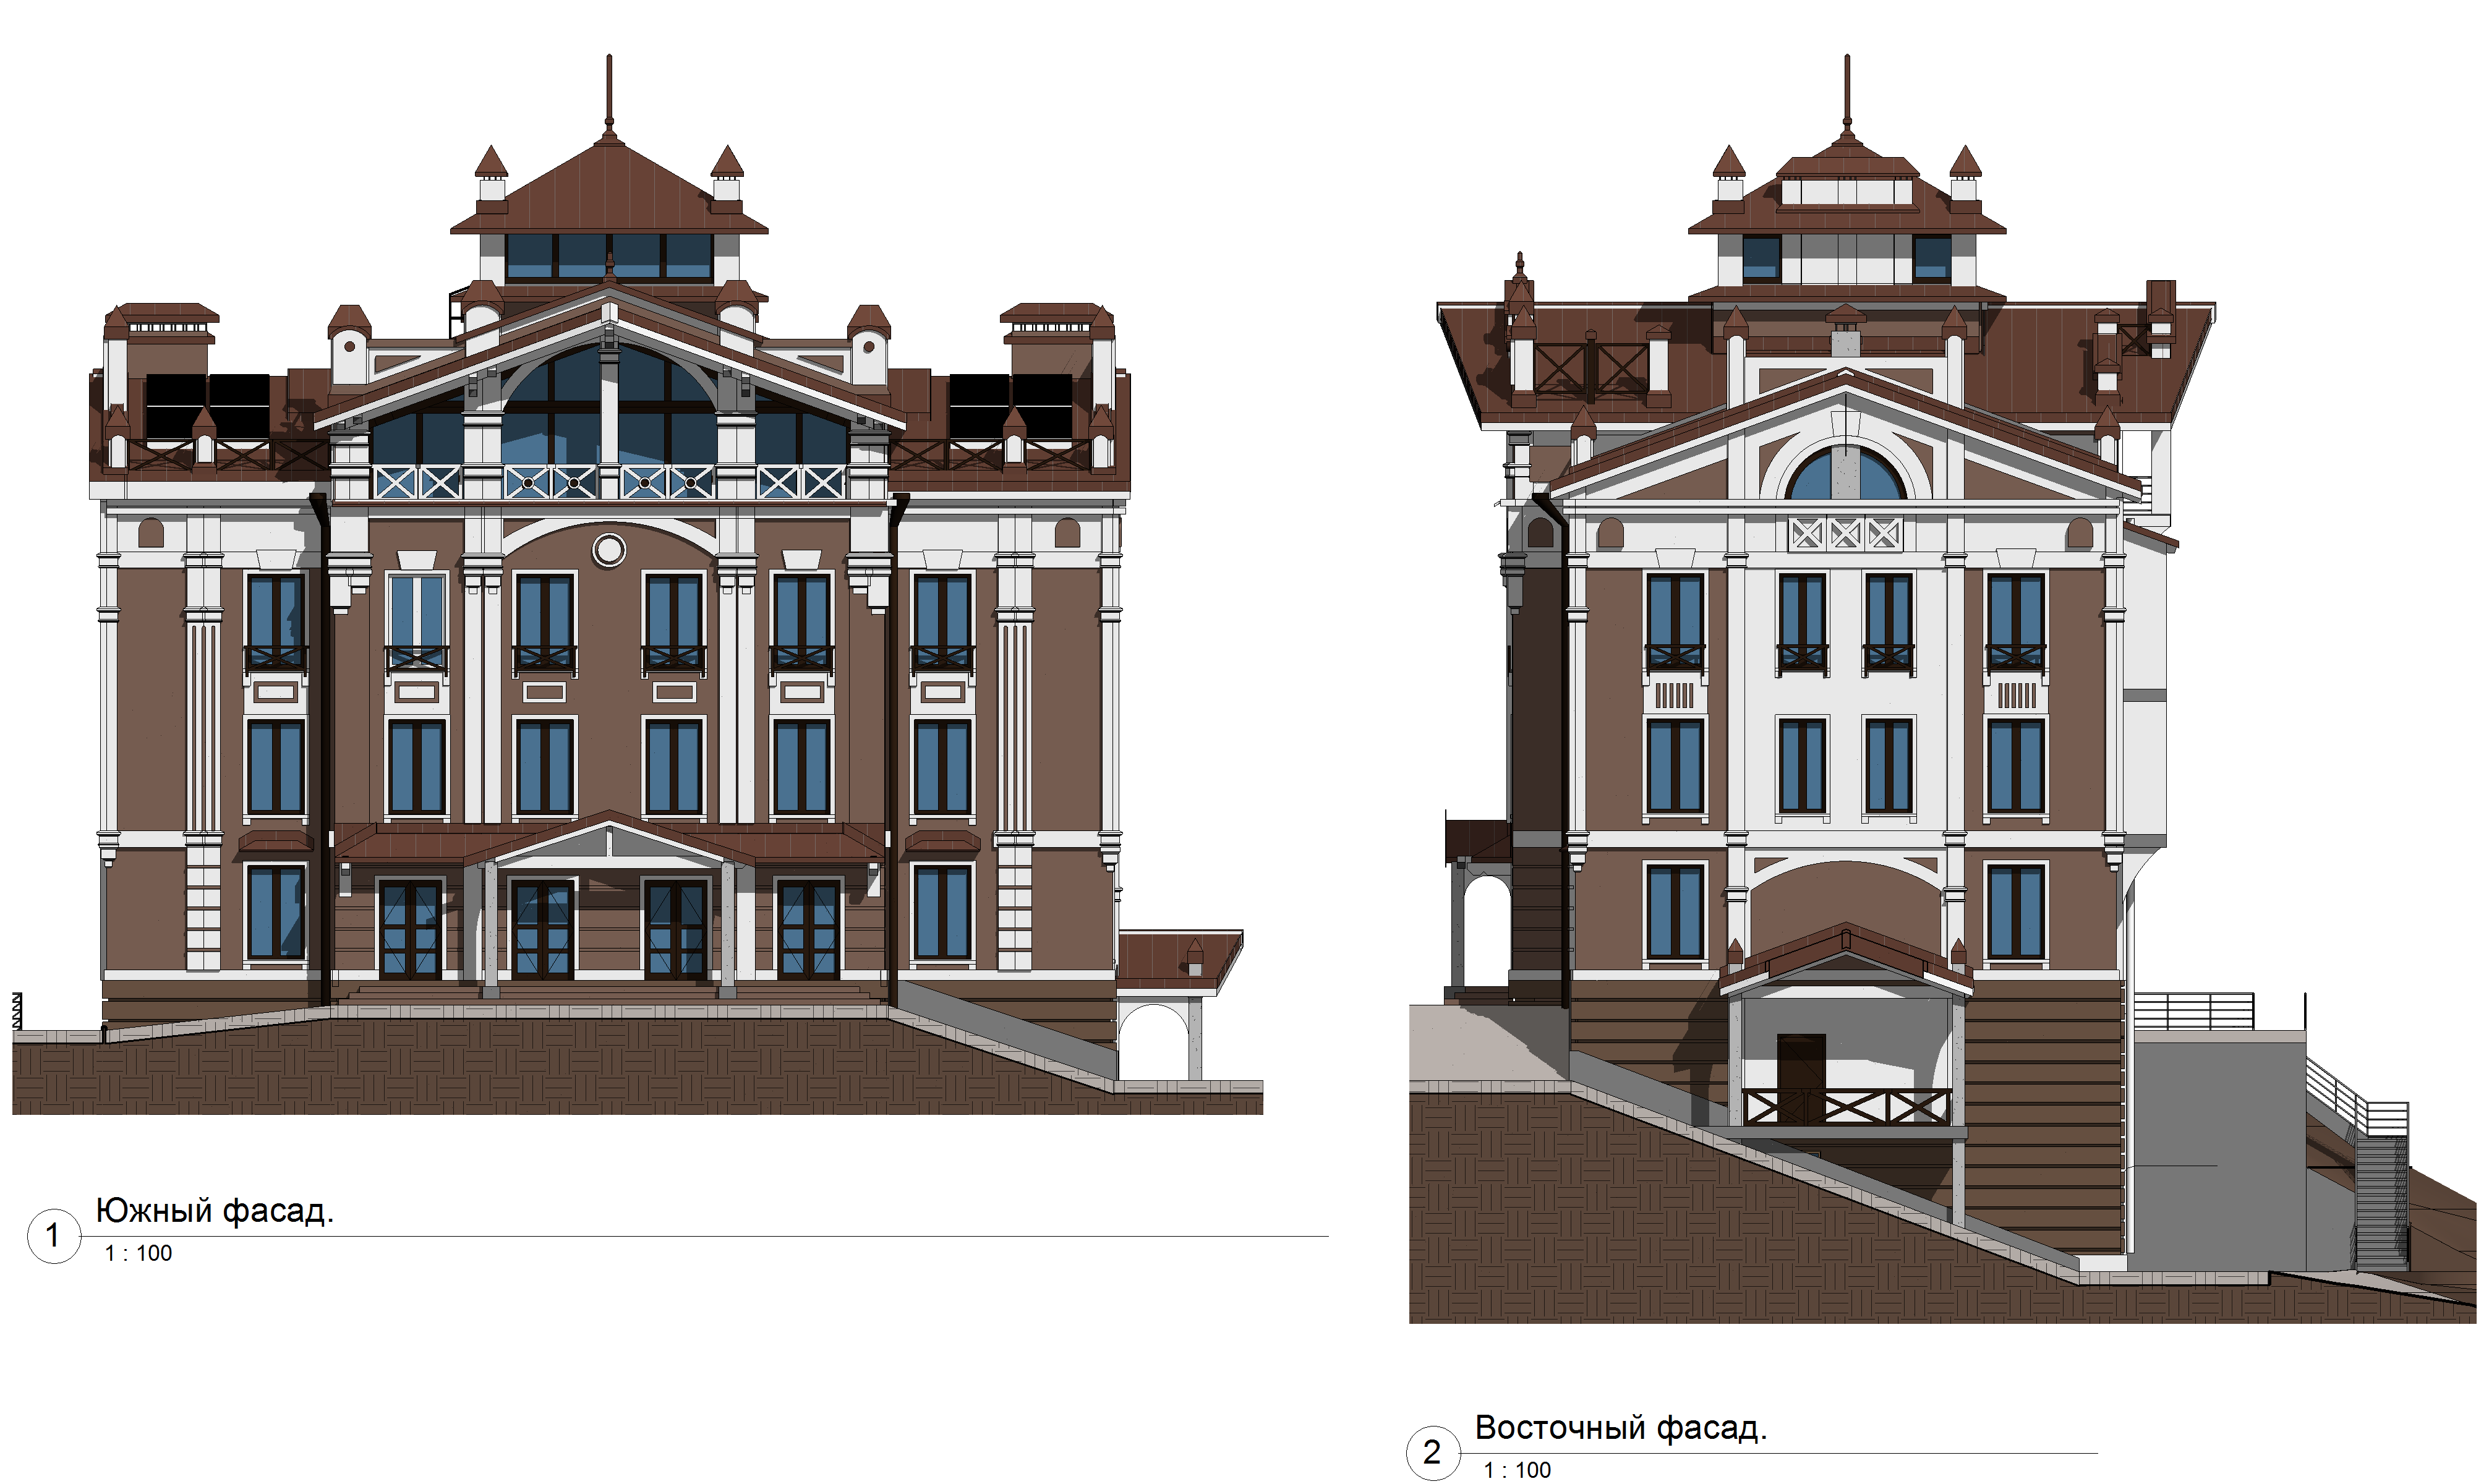 АПБ ГРАД: проектирование фасадных изменений зданий в Москве.